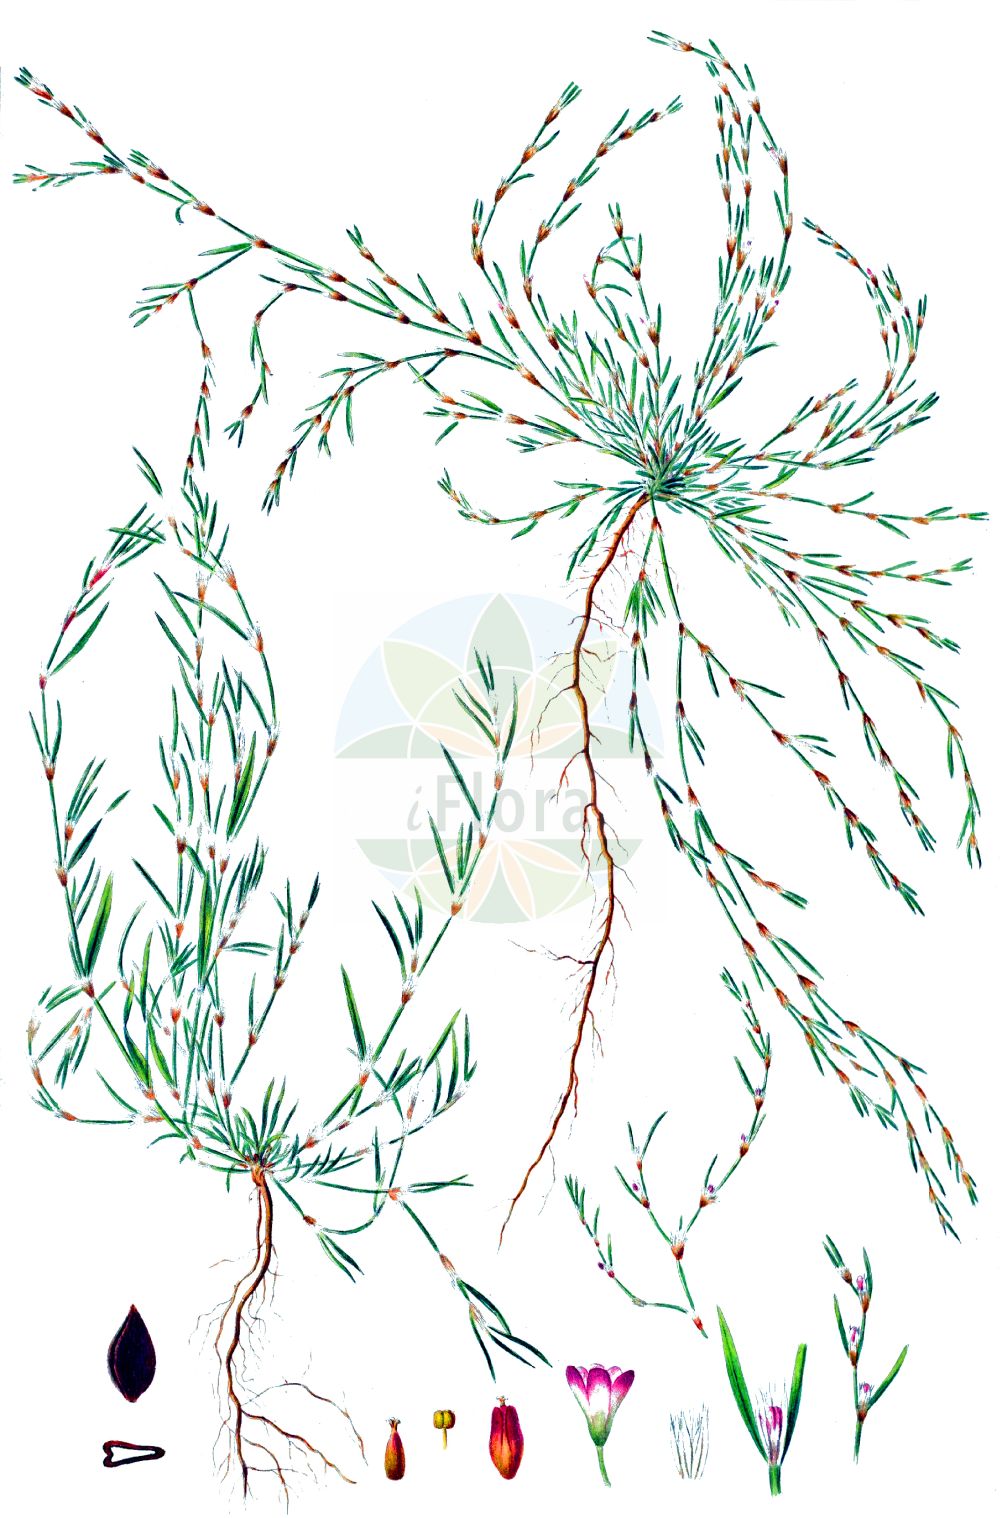 Historische Abbildung von Polygonum aviculare (Echter Vogelknöterich - Knotgrass). Das Bild zeigt Blatt, Bluete, Frucht und Same. ---- Historical Drawing of Polygonum aviculare (Echter Vogelknöterich - Knotgrass). The image is showing leaf, flower, fruit and seed.(Polygonum aviculare,Echter Vogelknöterich,Knotgrass,Polygonum aviculare,Polygonum dissitiflorum,Polygonum erectum,Polygonum gracile,Polygonum heterophyllum,Polygonum litorale,Echter Vogelknoeterich,Vogel-Knoeterich,Knotgrass,Common Knotweed,Polygonum,Knöterich,Knotgrass,Polygonaceae,Knöterichgewächse,Knotgrass family,Blatt,Bluete,Frucht,Same,leaf,flower,fruit,seed,Oeder (1761-1883))